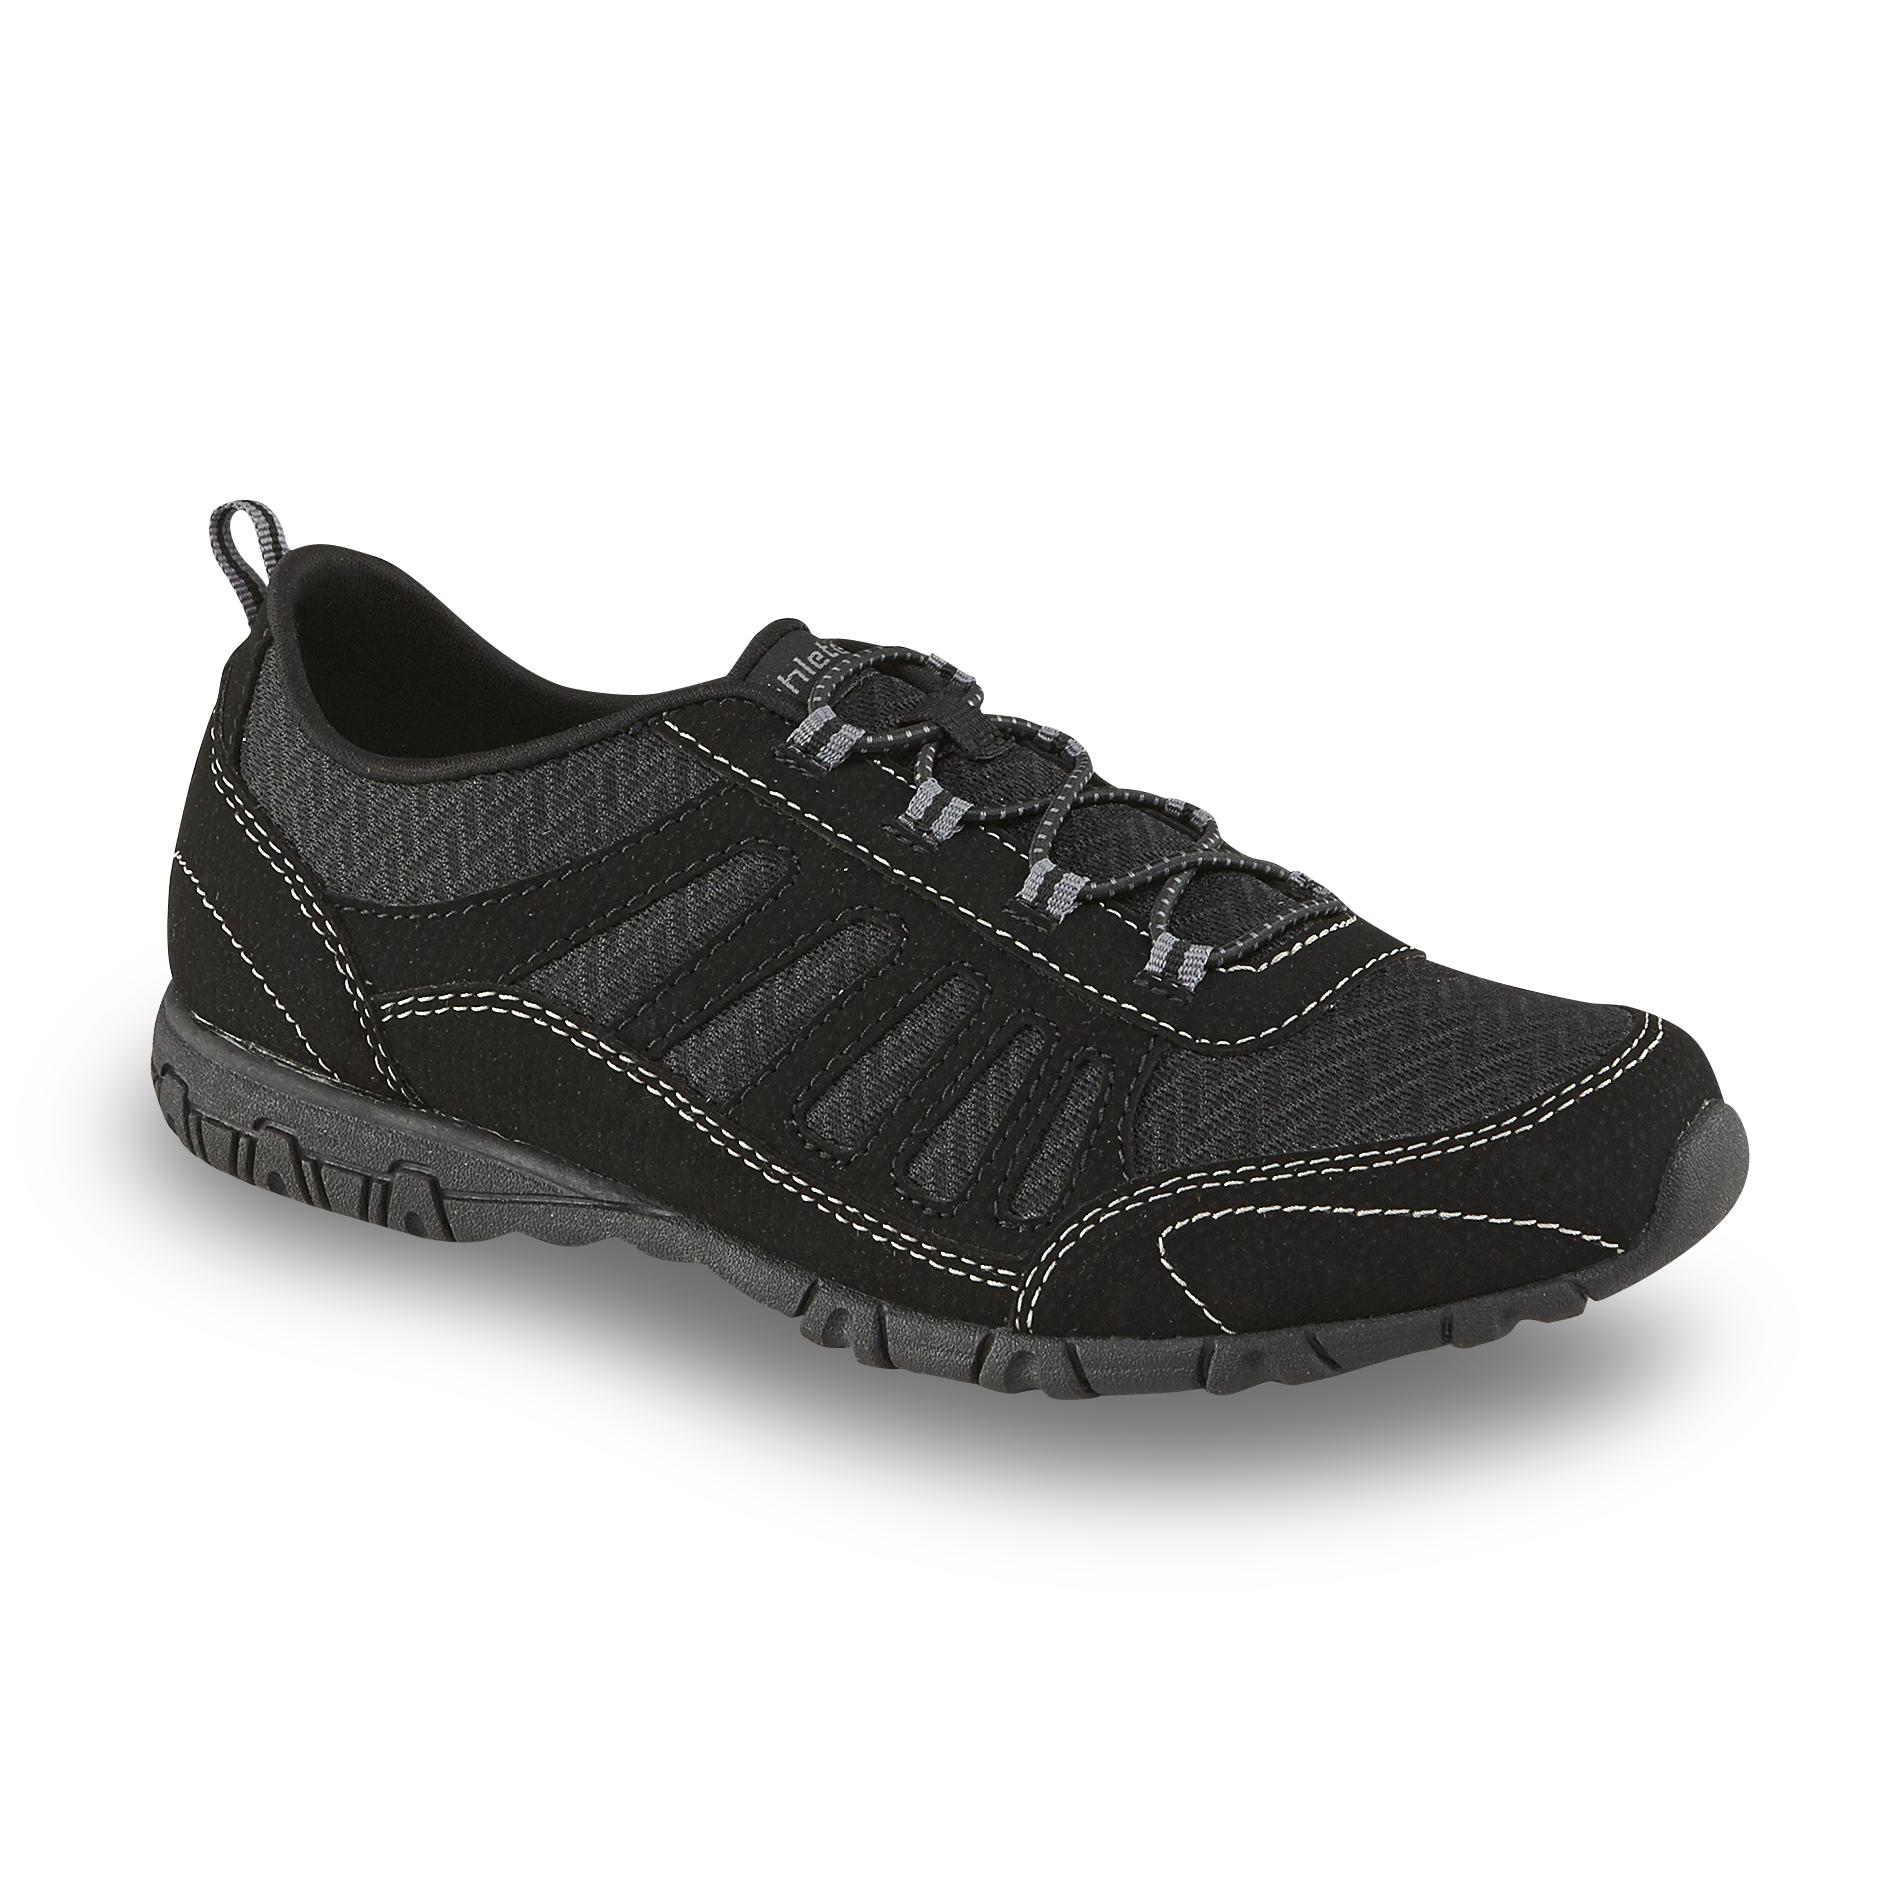 Athletech Women's Hanley Black Slip-On Sneaker - Wide Available ...